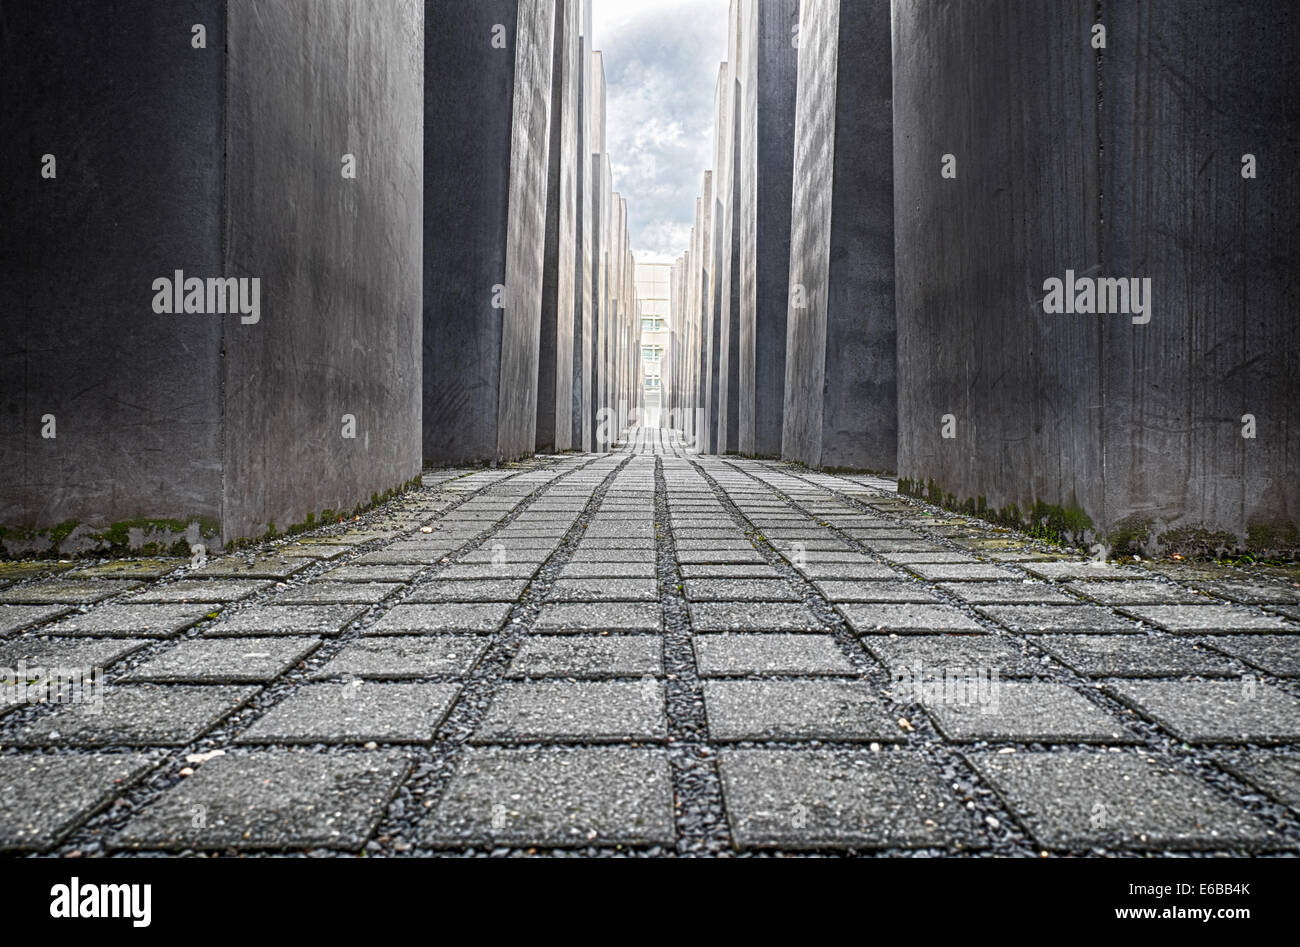 Vista dentro il memoriale dell'Olocausto (Memoriale al assassinato ebrei d'Europa) a Berlino Germania Foto Stock